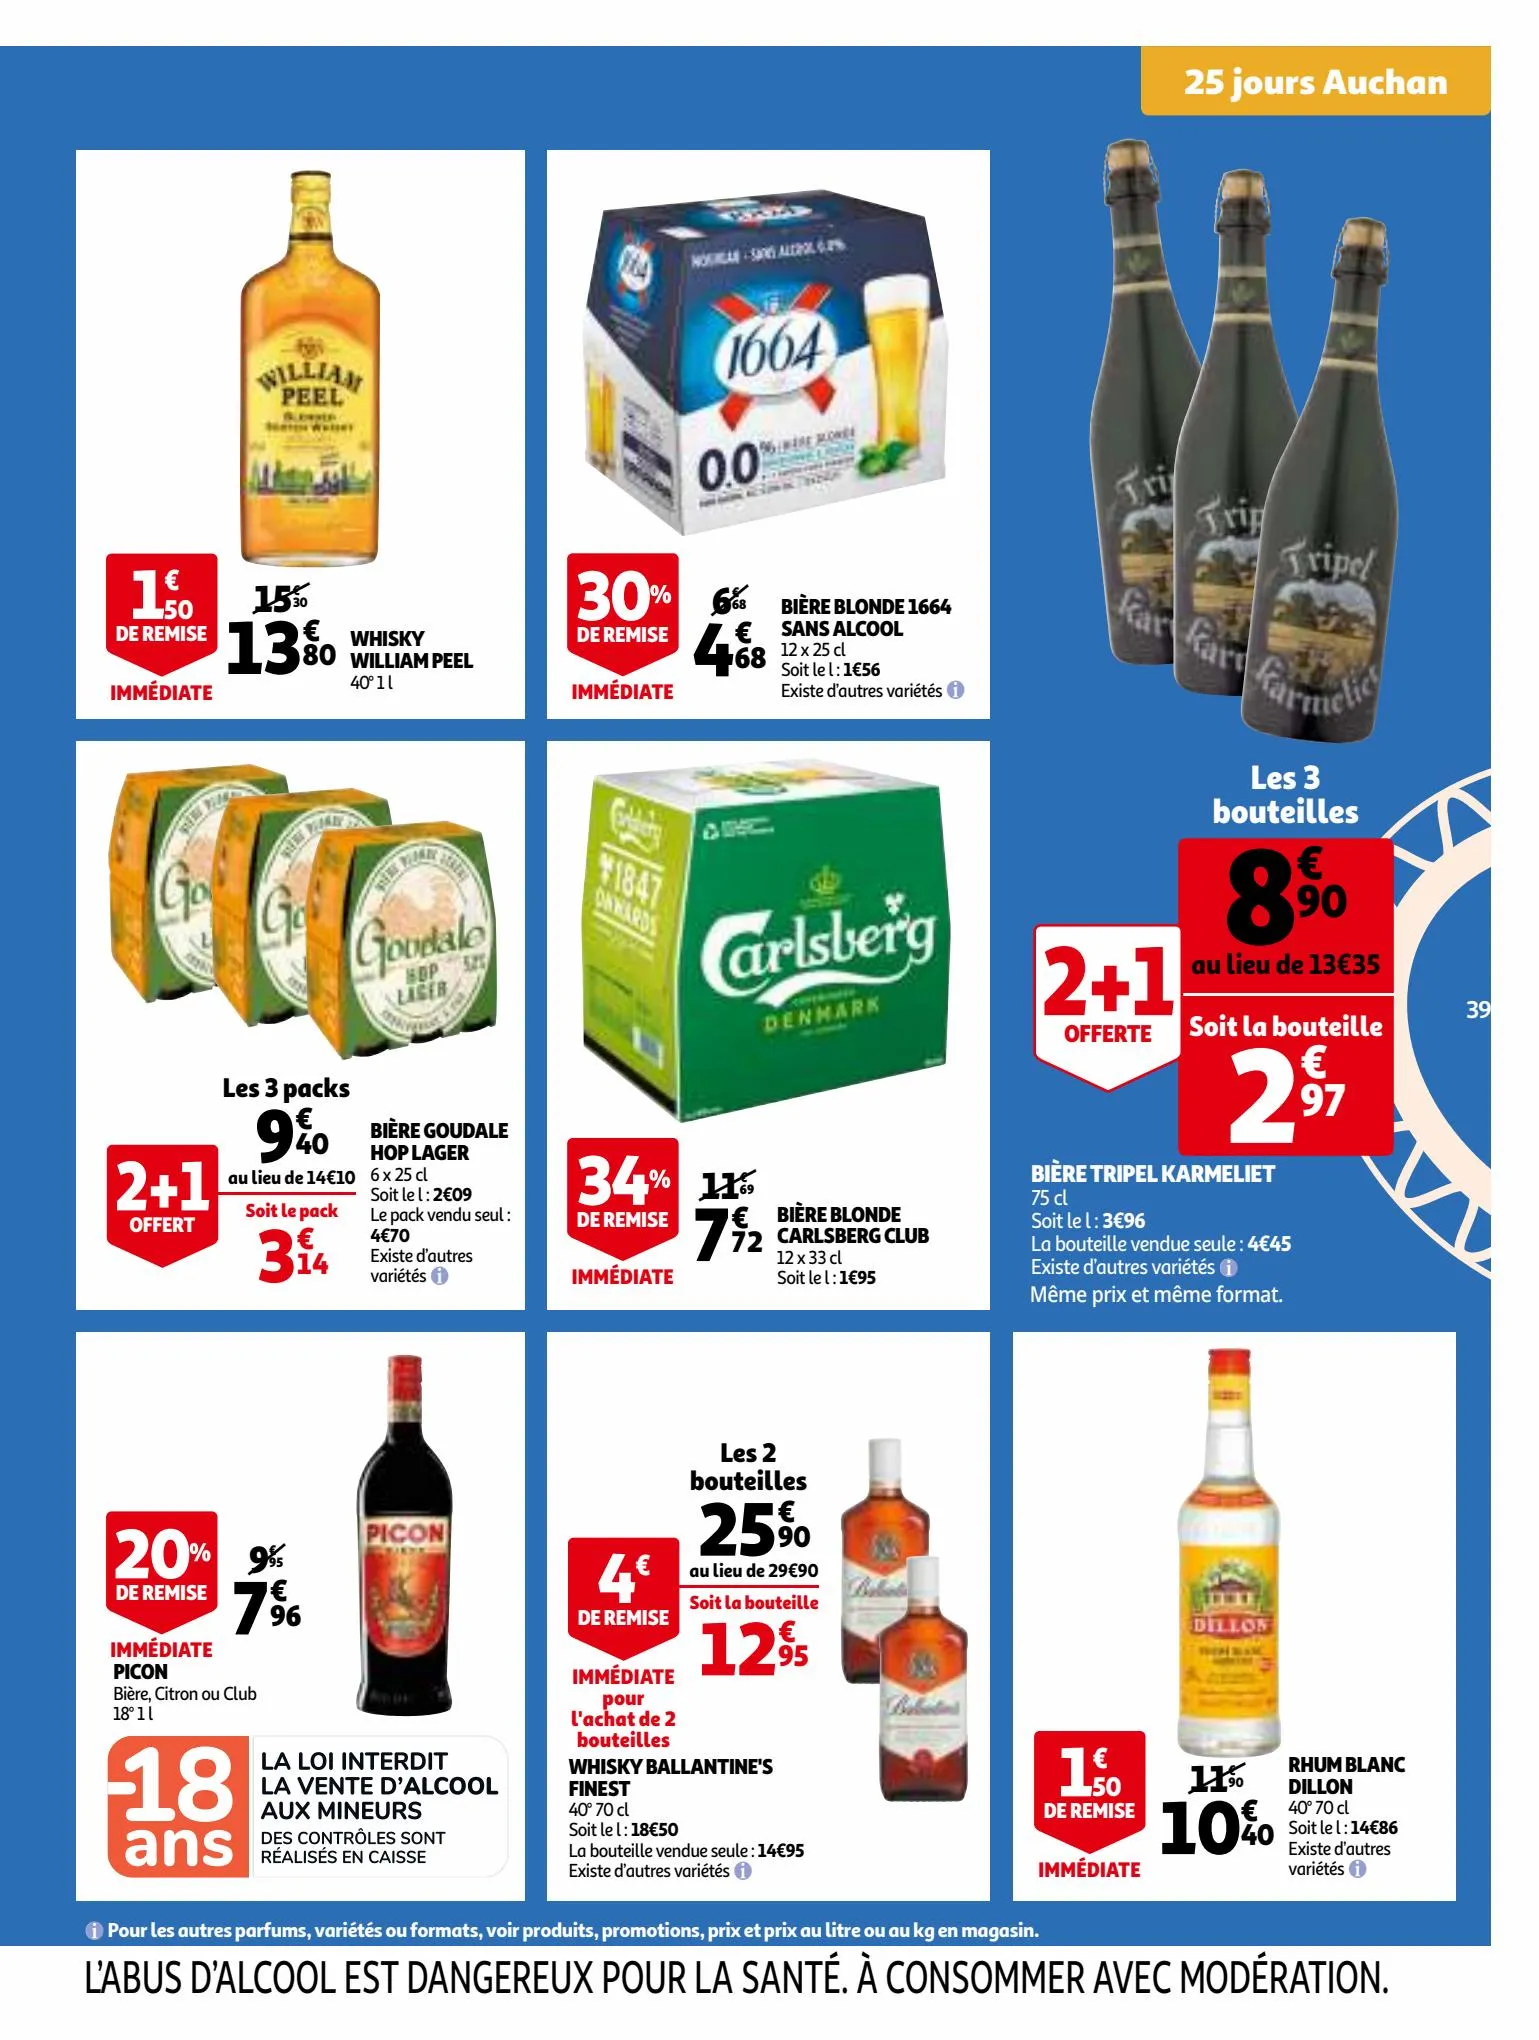 Catalogue 25 Jours Auchan, page 00039